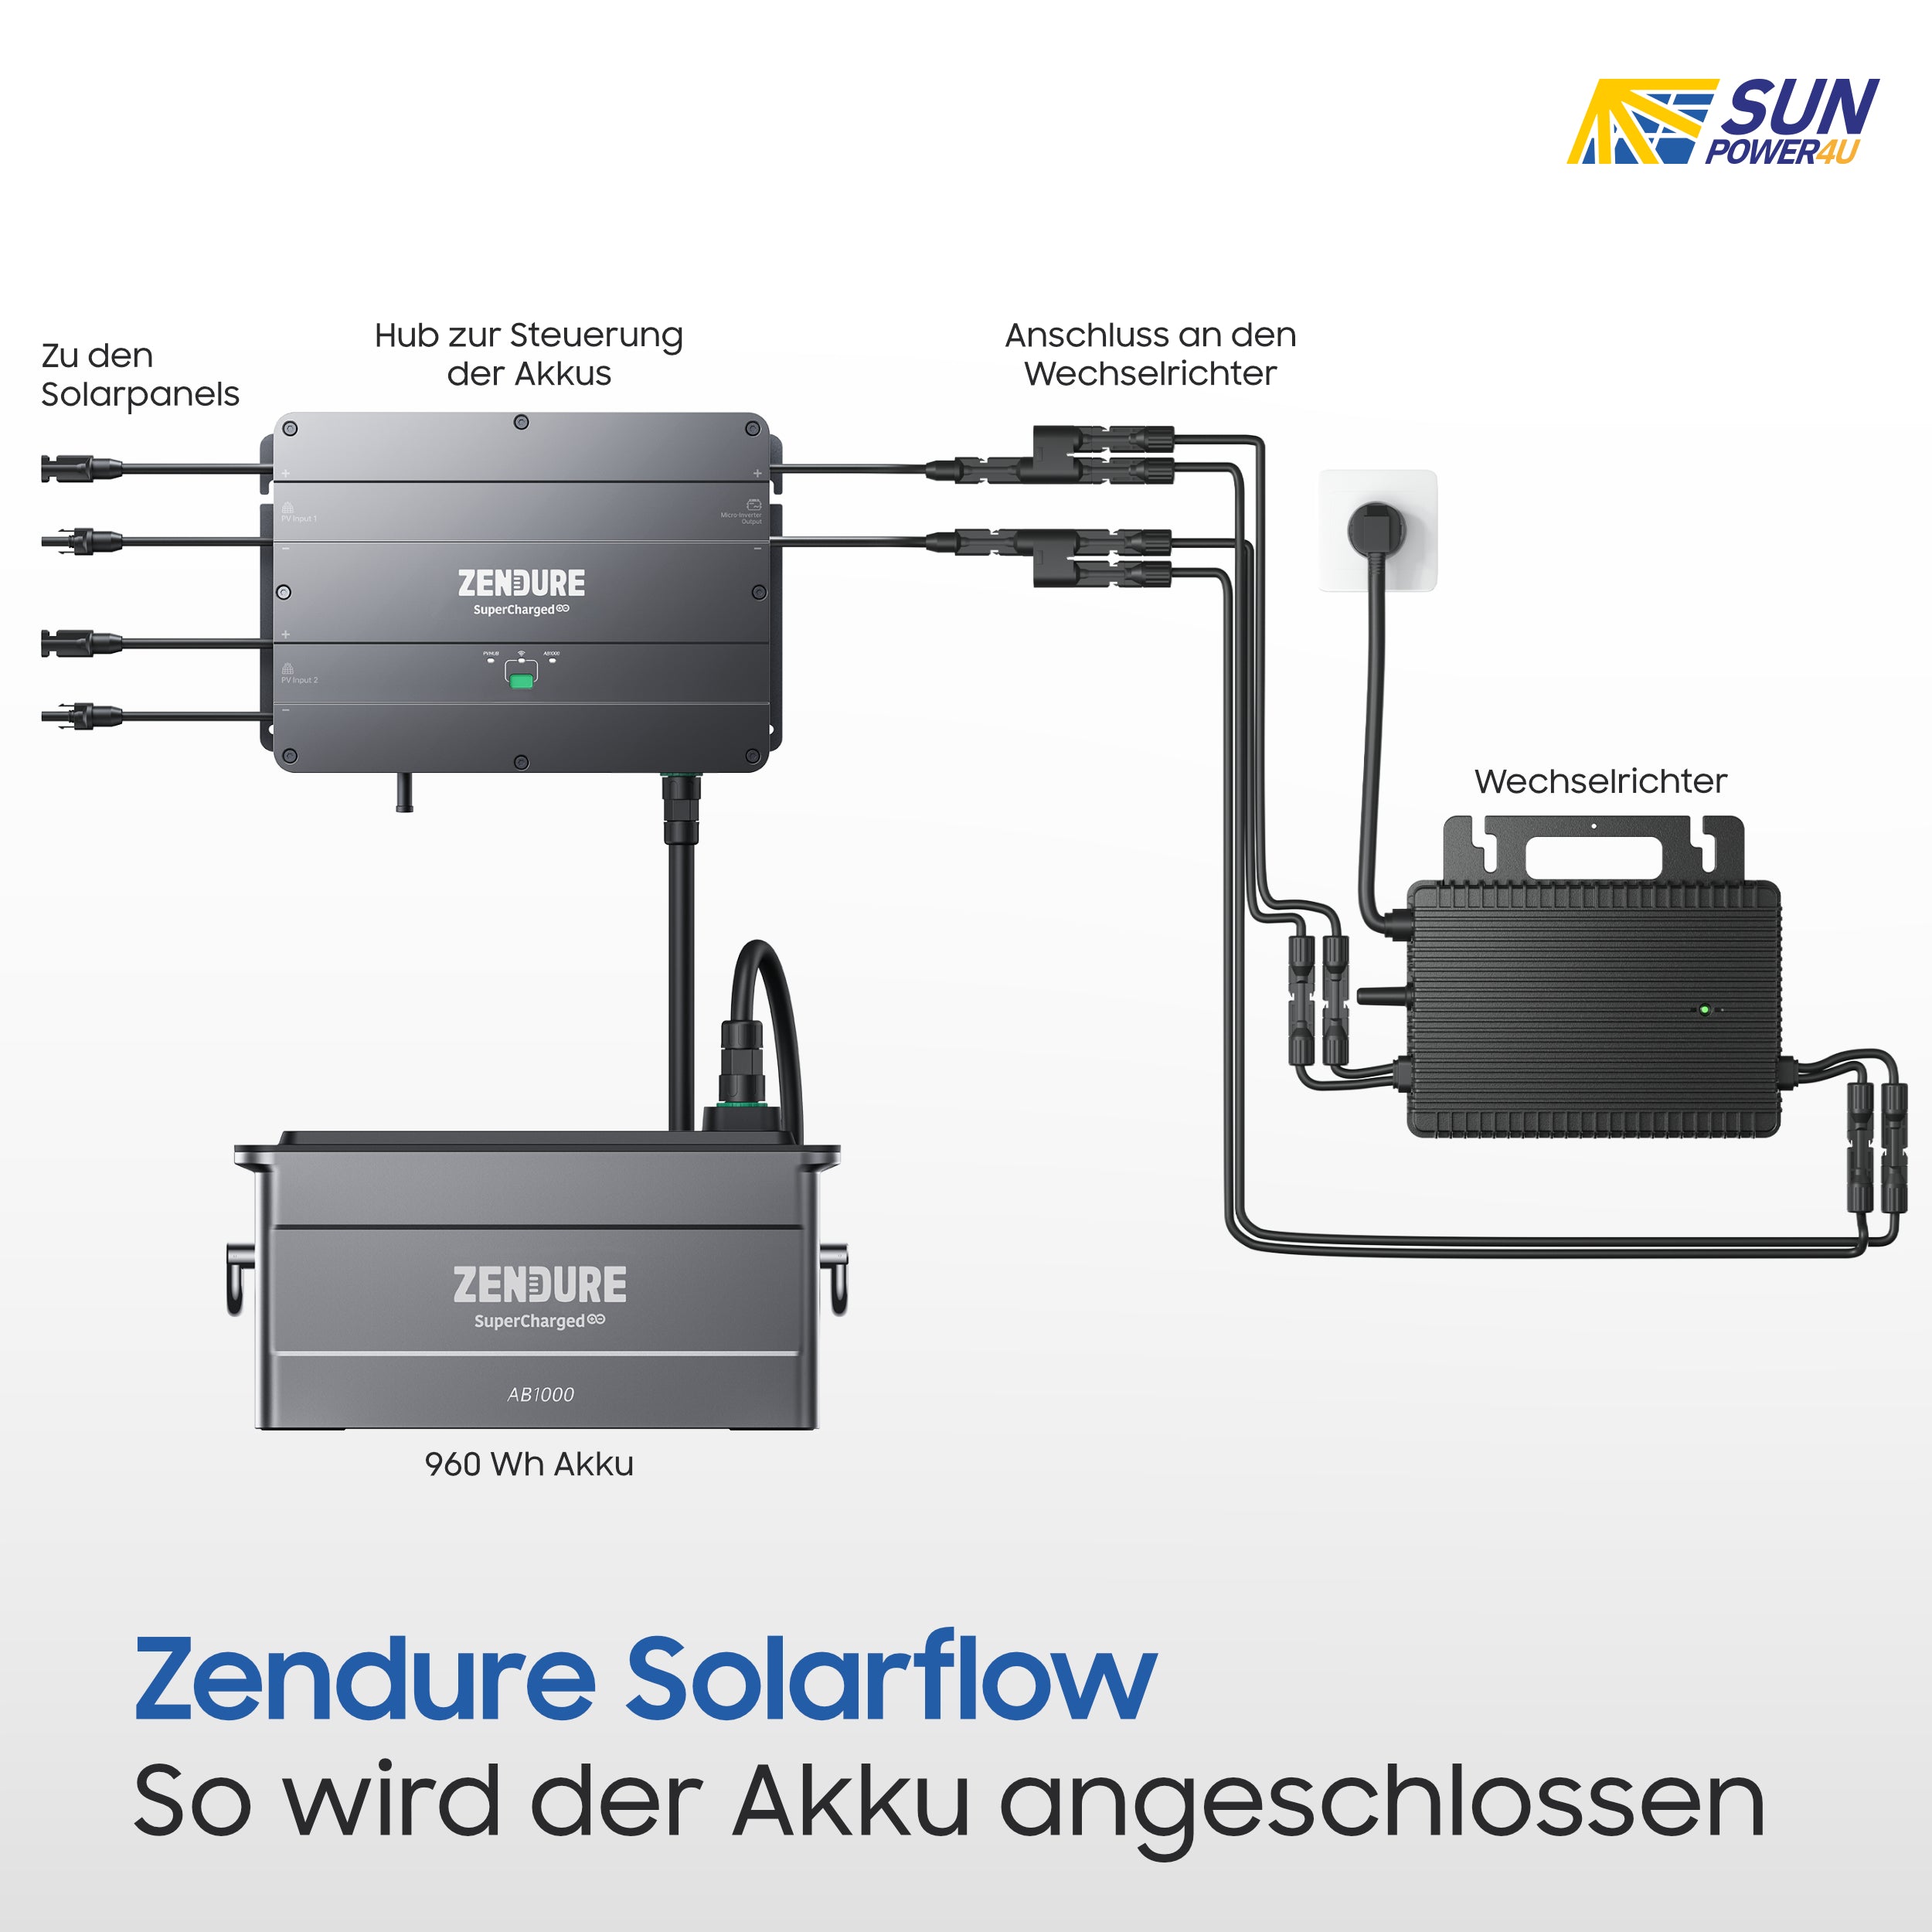 Zendure SolarFlow Speicher - 960Wh mit 1 x AB1000 Akku